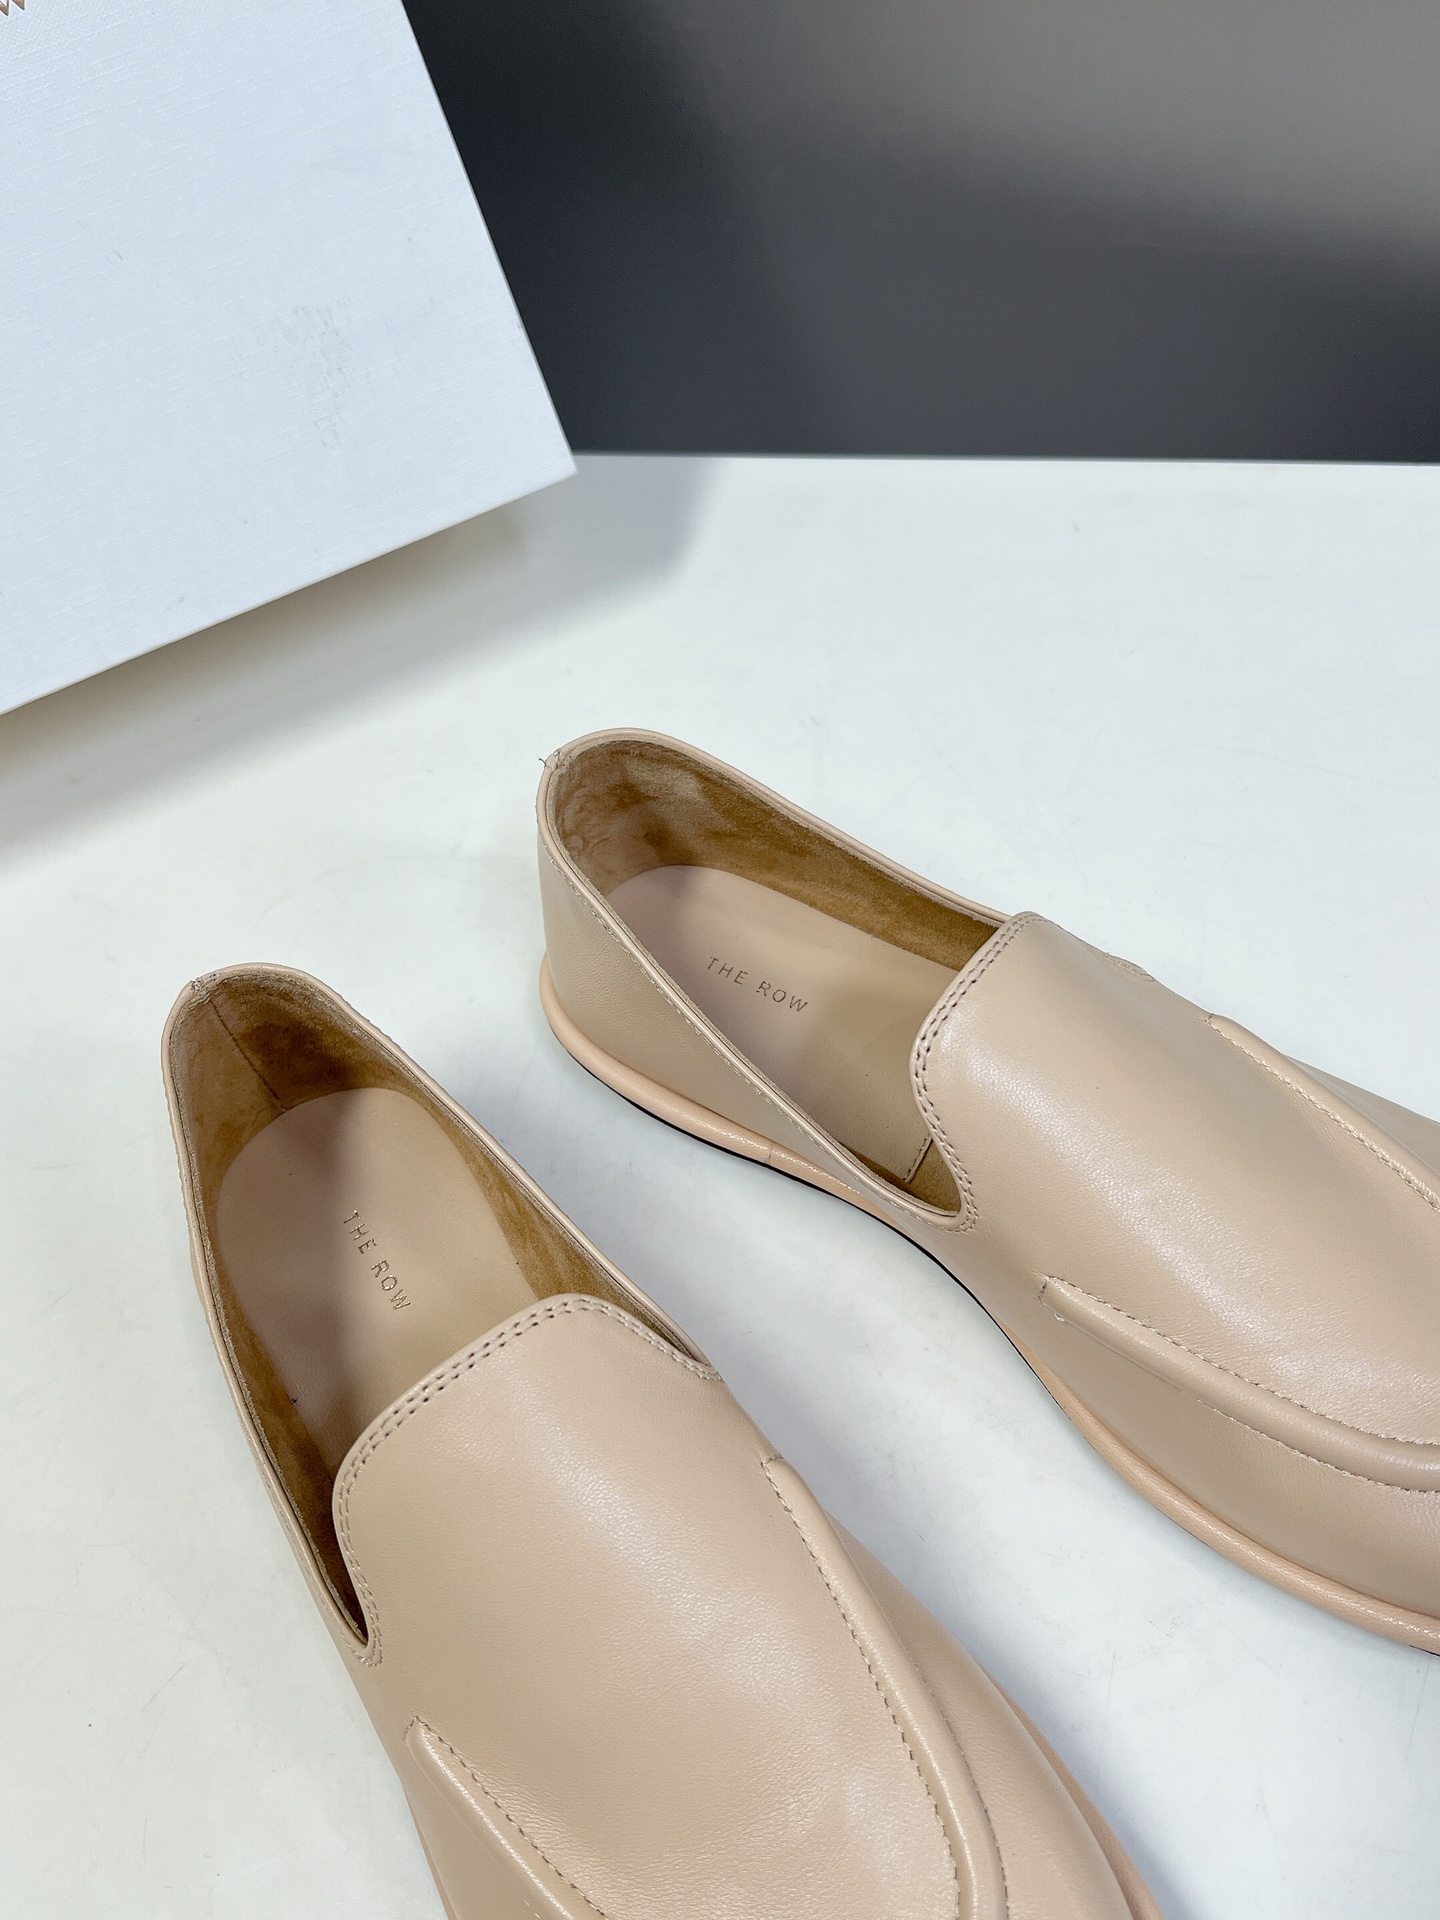 小众潮牌TheRow“Canal”芭蕾舞鞋️第一眼看到这个鞋子就爱上了带点复古味随意搭配都好看！各大网红